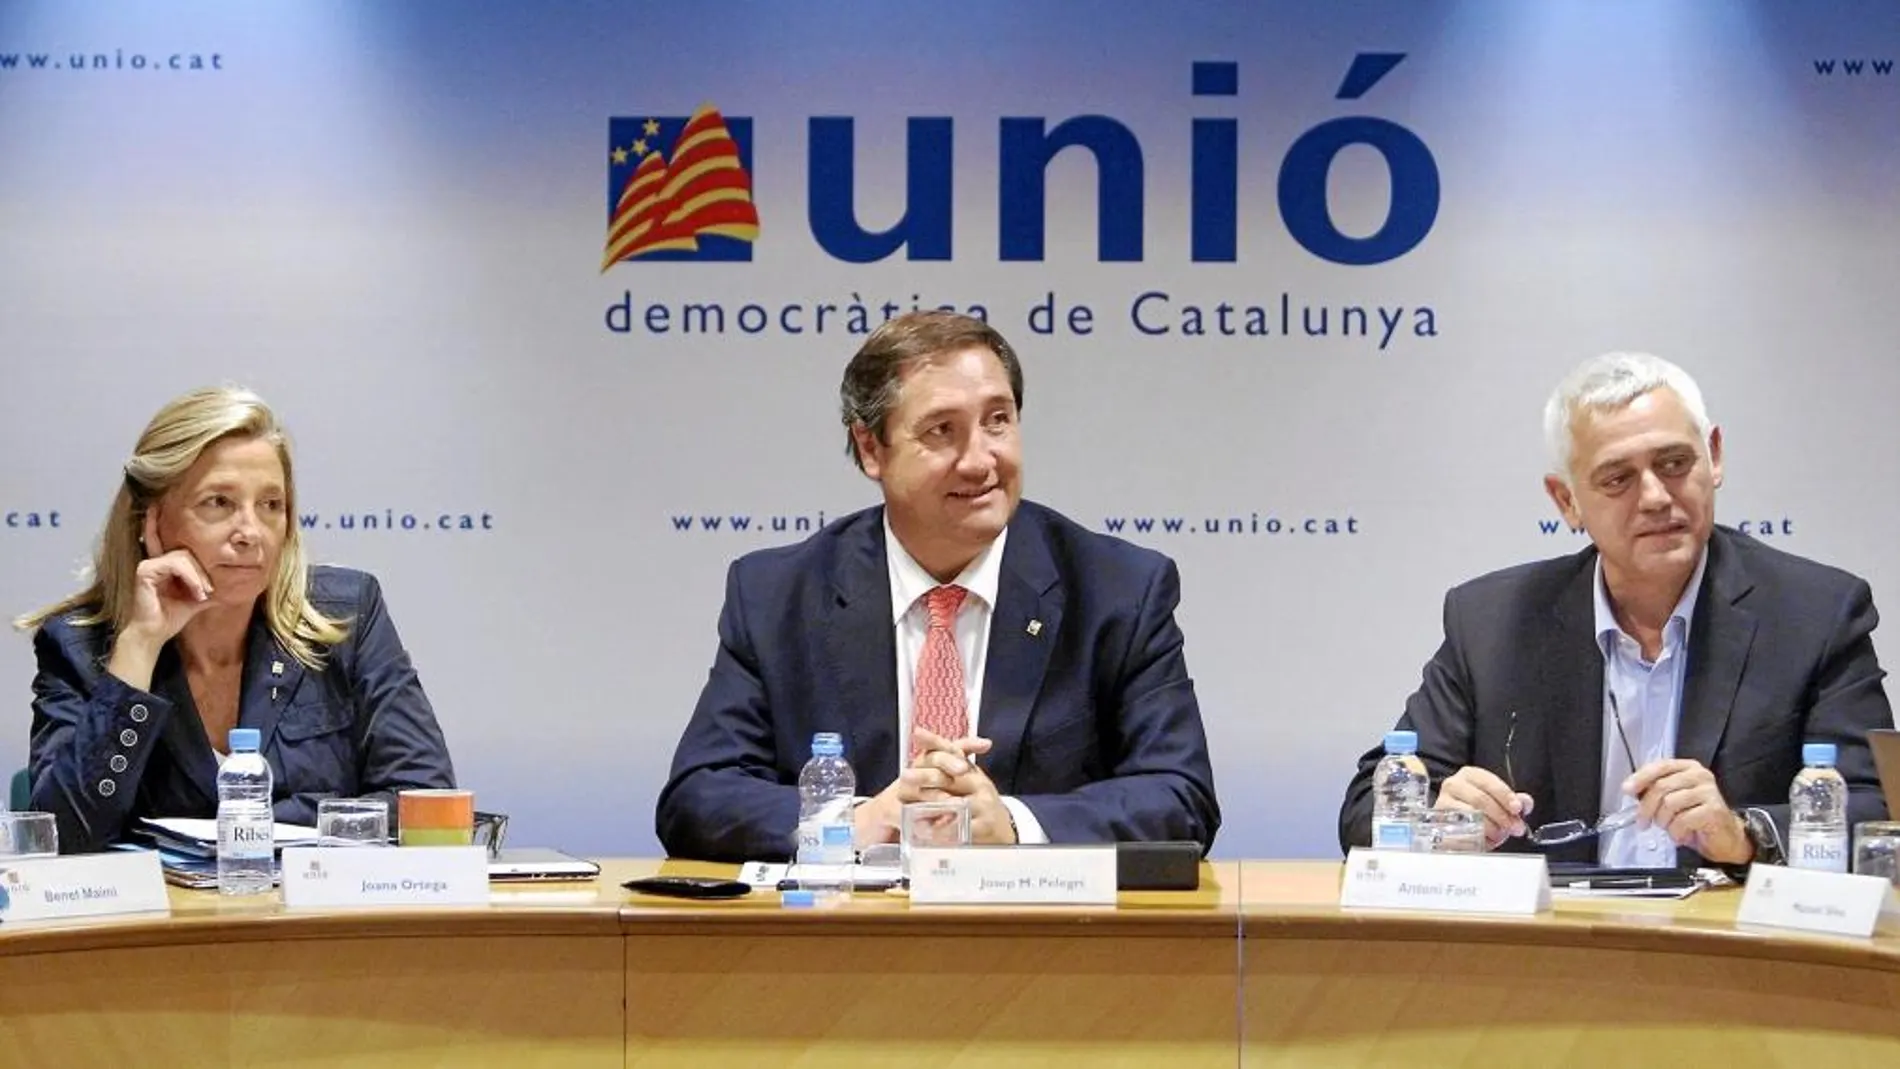 Unió celebró el comité de gobierno del partido sin Josep Antoni Duran Lleida, en la imagen, Joana Ortega, Josep Mª Pelegrí y Antoni Font